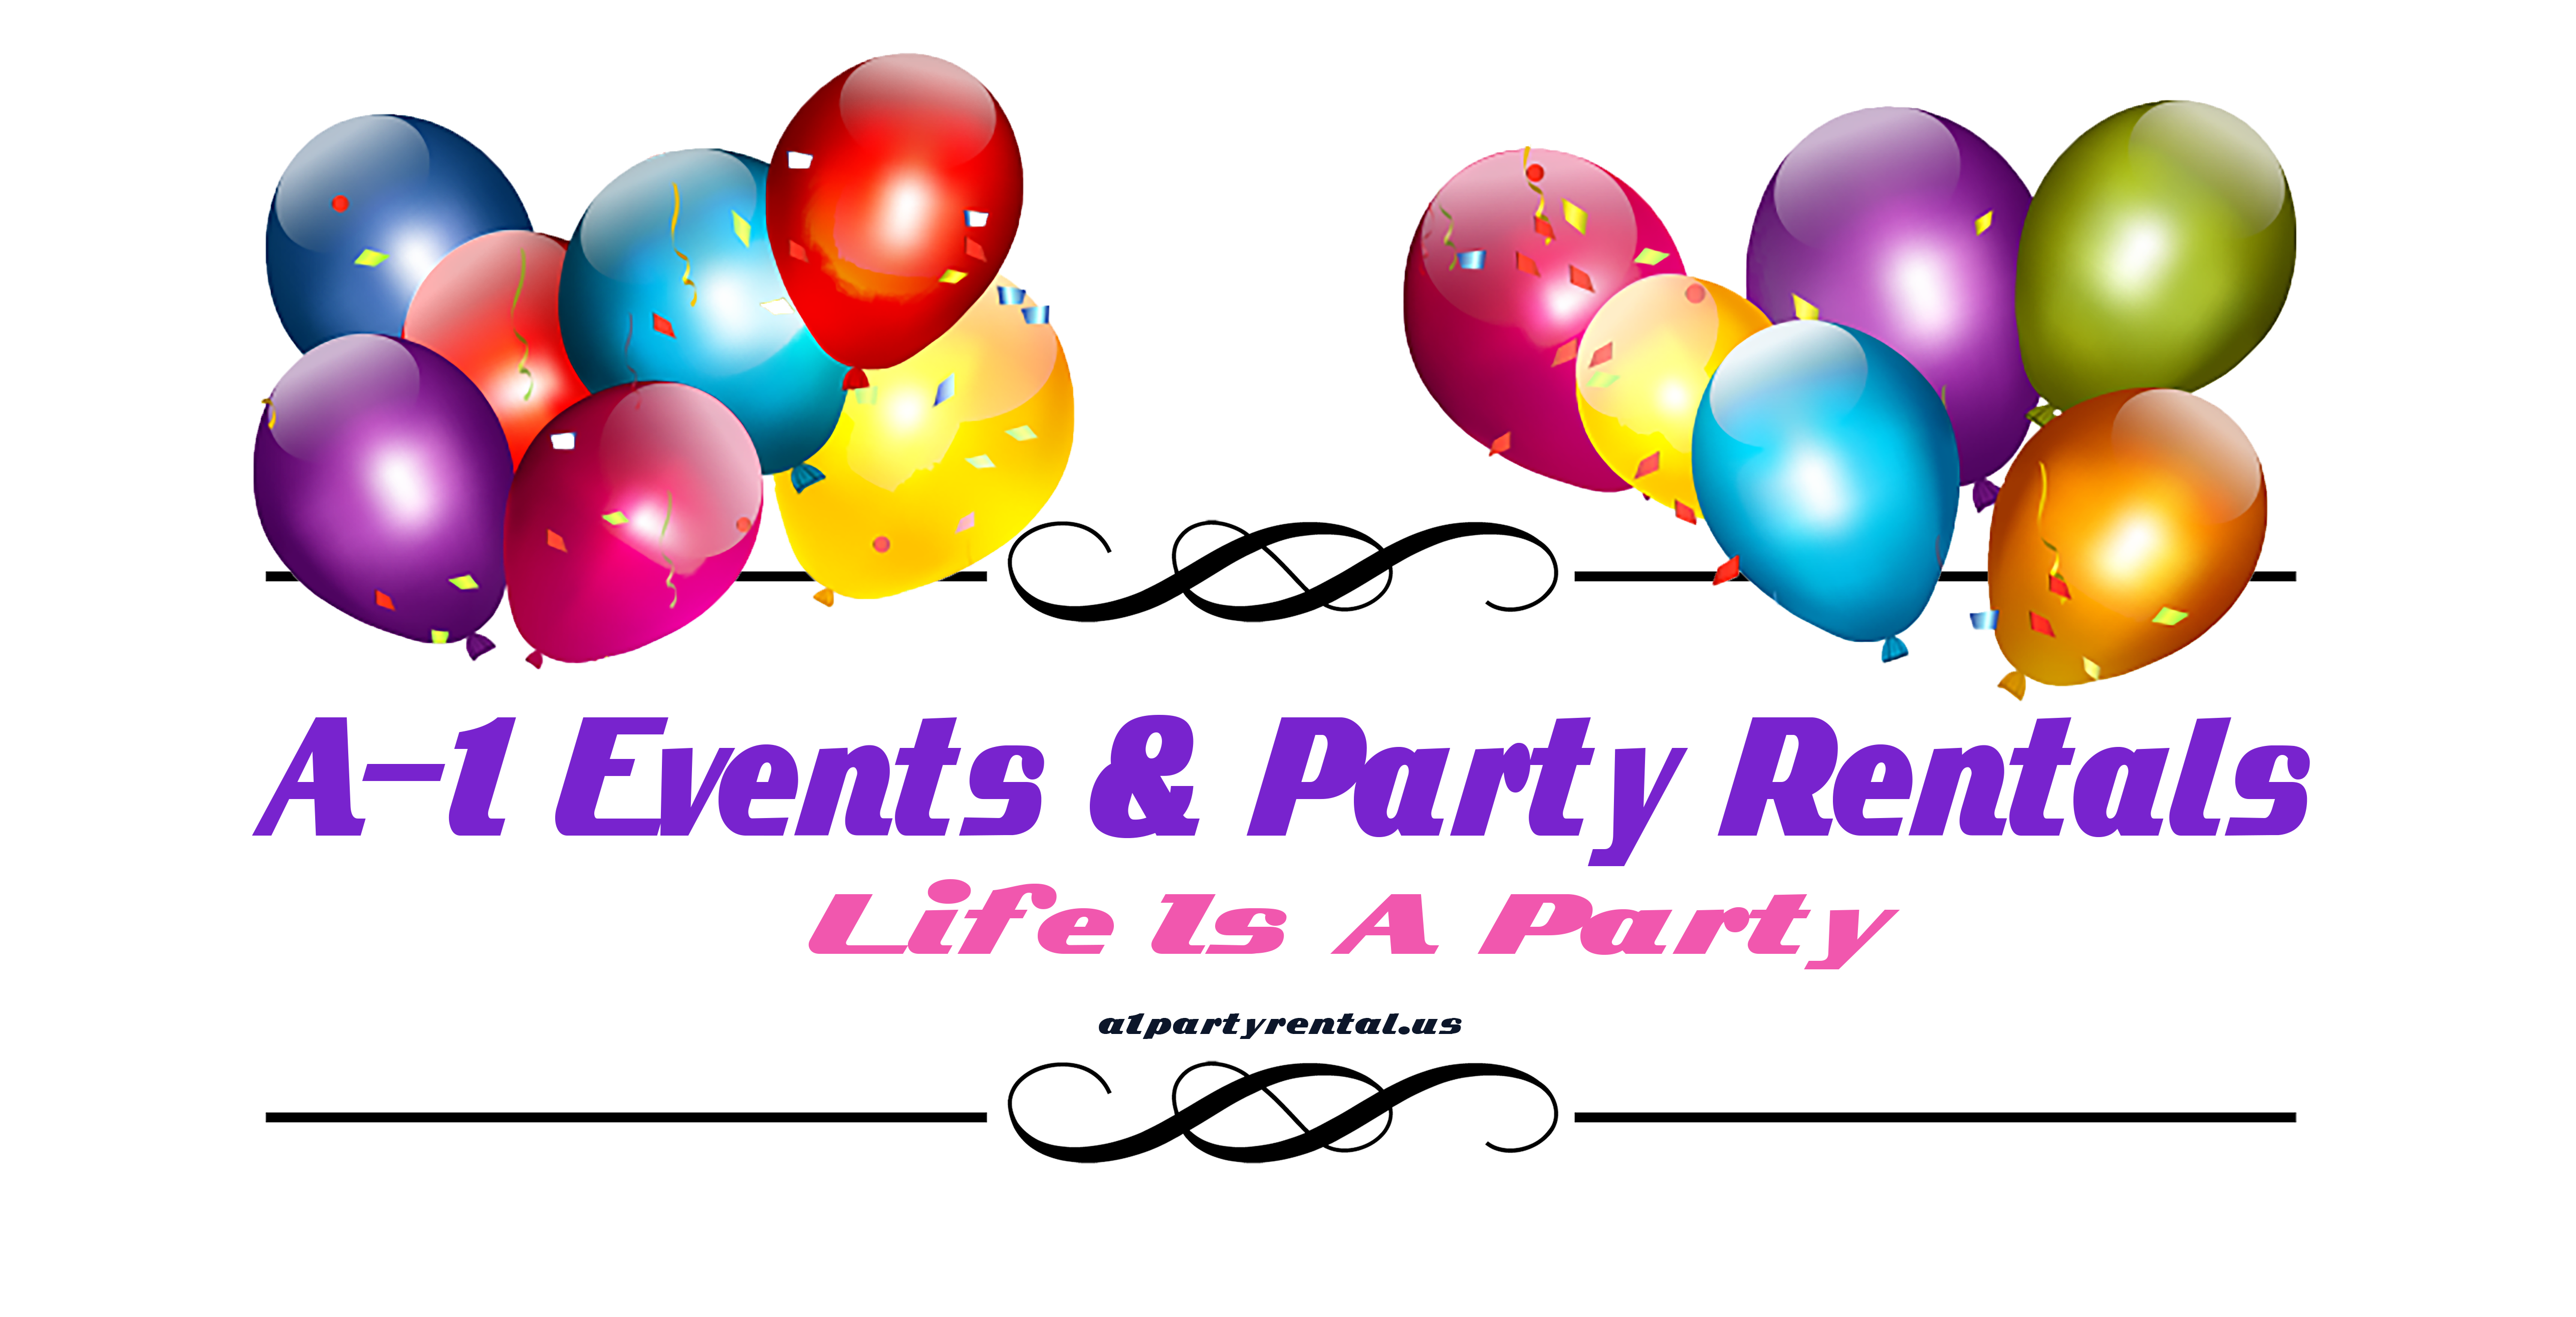 A-1 Events & Party Rentals